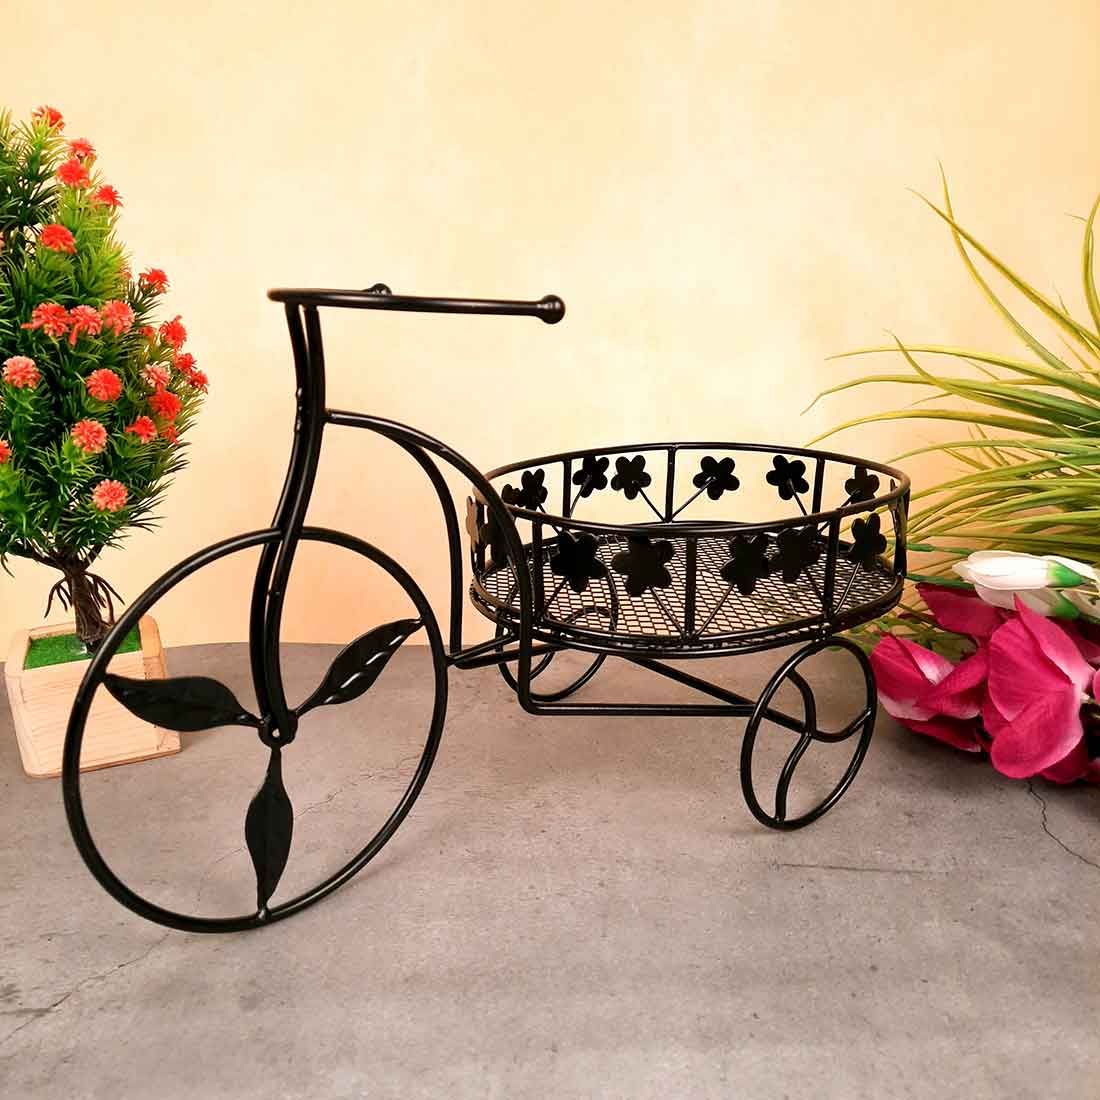 Fruit Basket | Multipurpose Basket - Rickshaw Design - For Fruits, Vegetables, Kitchen & Dining Table Decor - 15 Inch - Apkamart#Style_Pack of 2